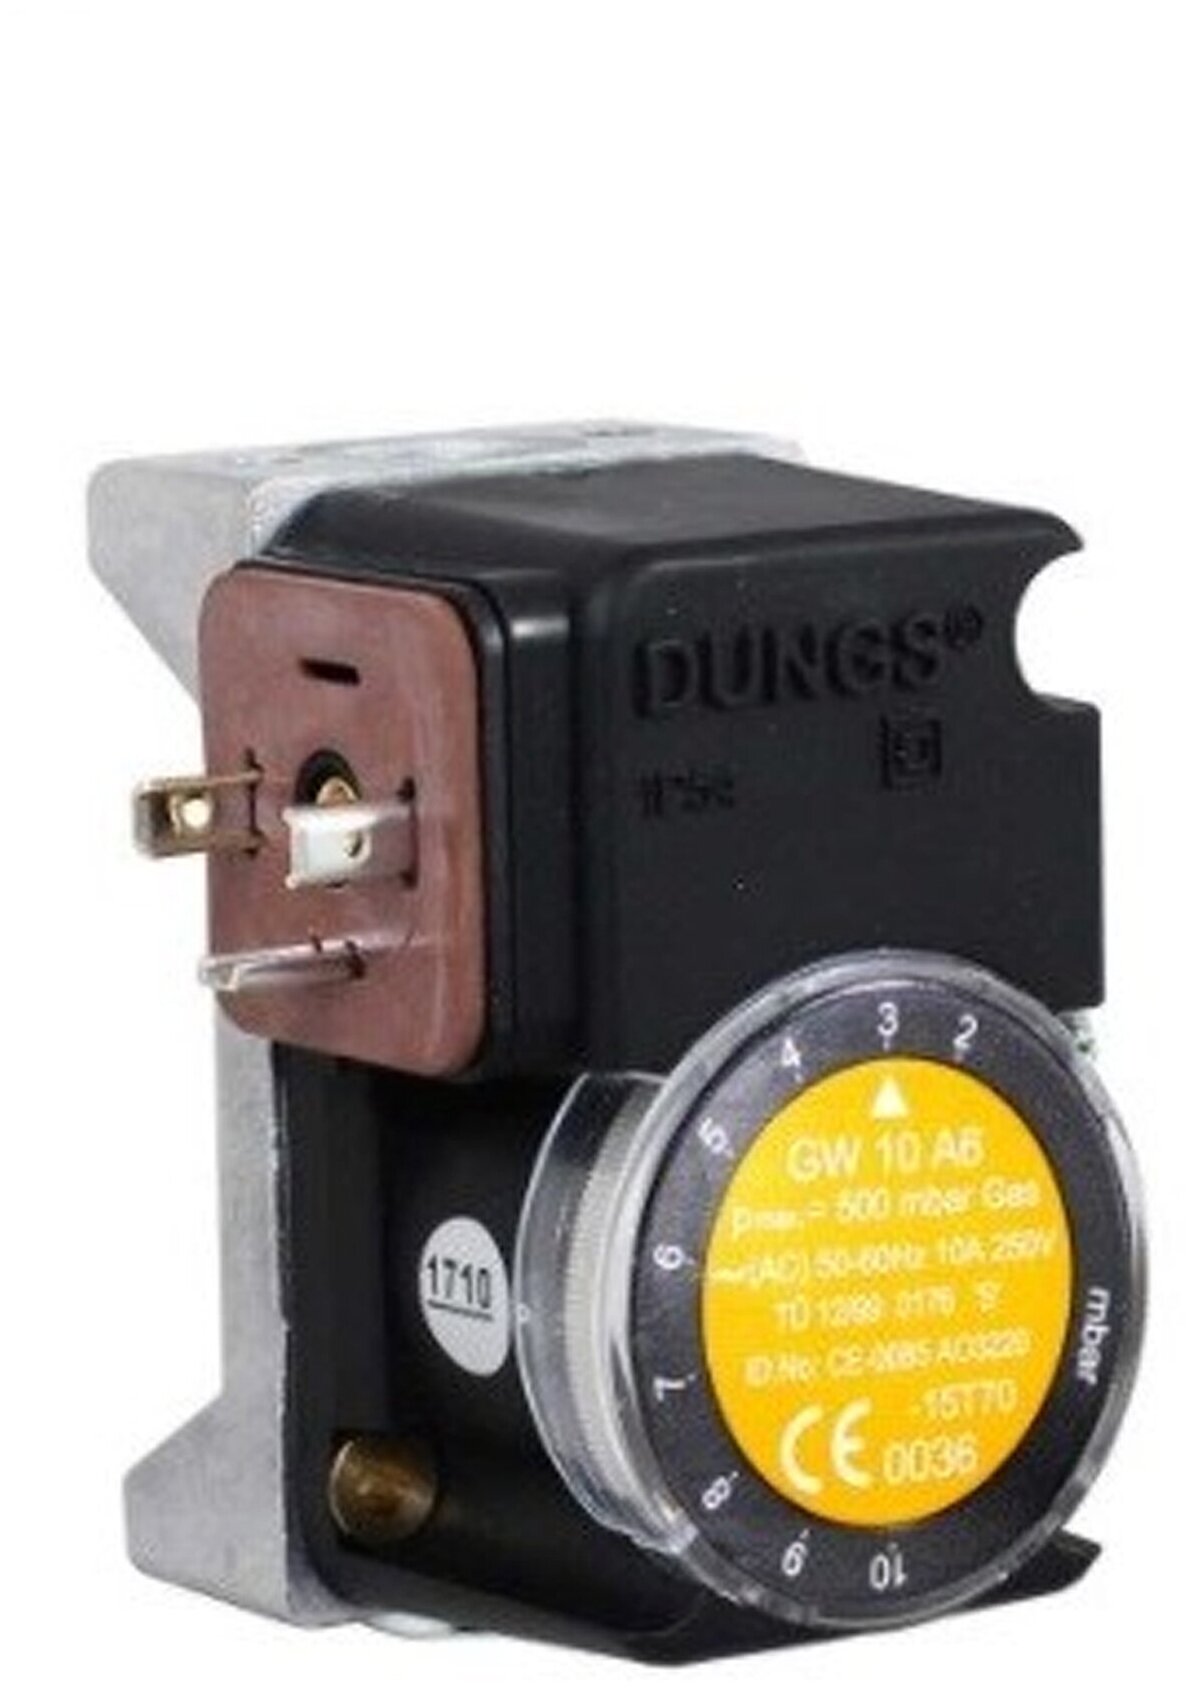 Датчик-реле давления газа DUNGS GW 10 A6 арт.272620, присоединение 1/4", Рмакс=500 mBar, диапазон: 2-10 mBar